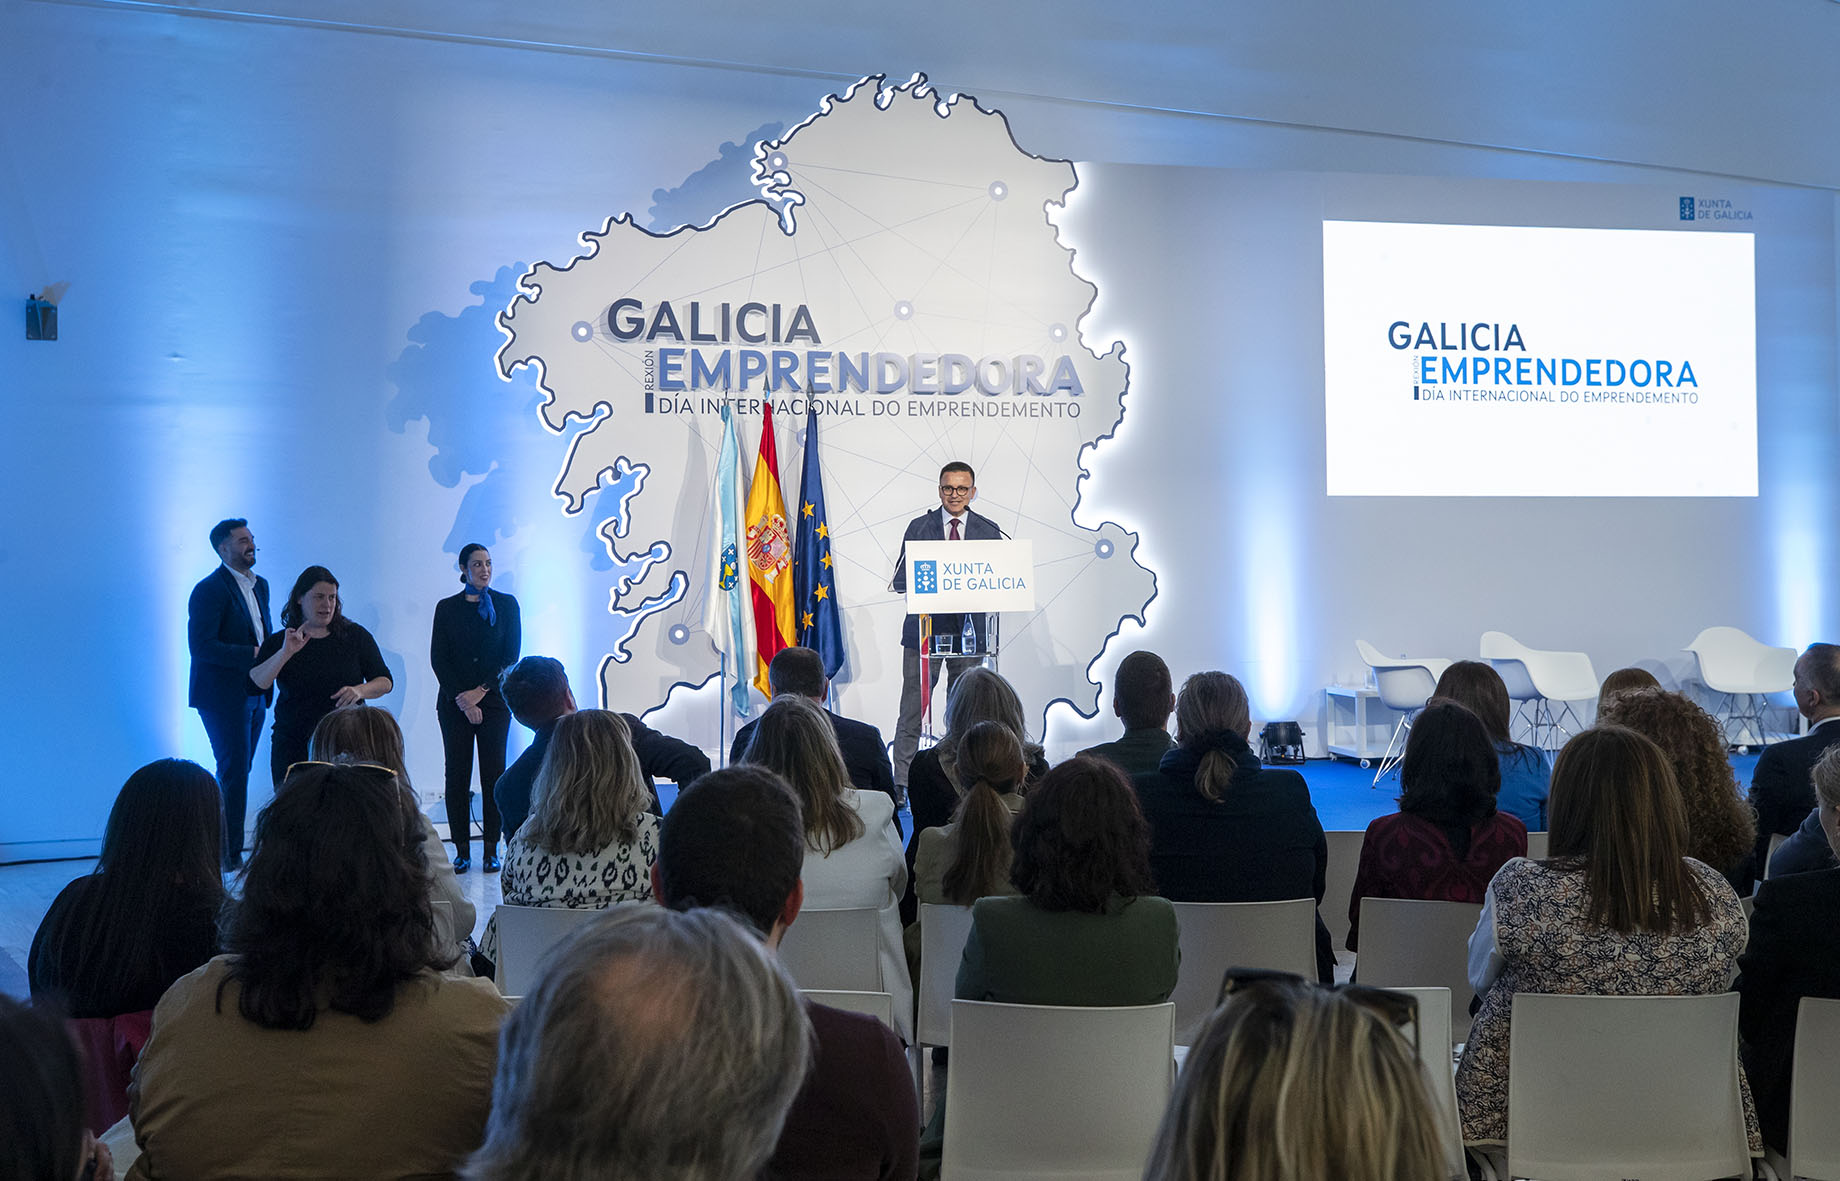 Image 1 of article A Xunta lanza un espazo web que reunirá todos os recursos para impulsar o emprendemento en Galicia